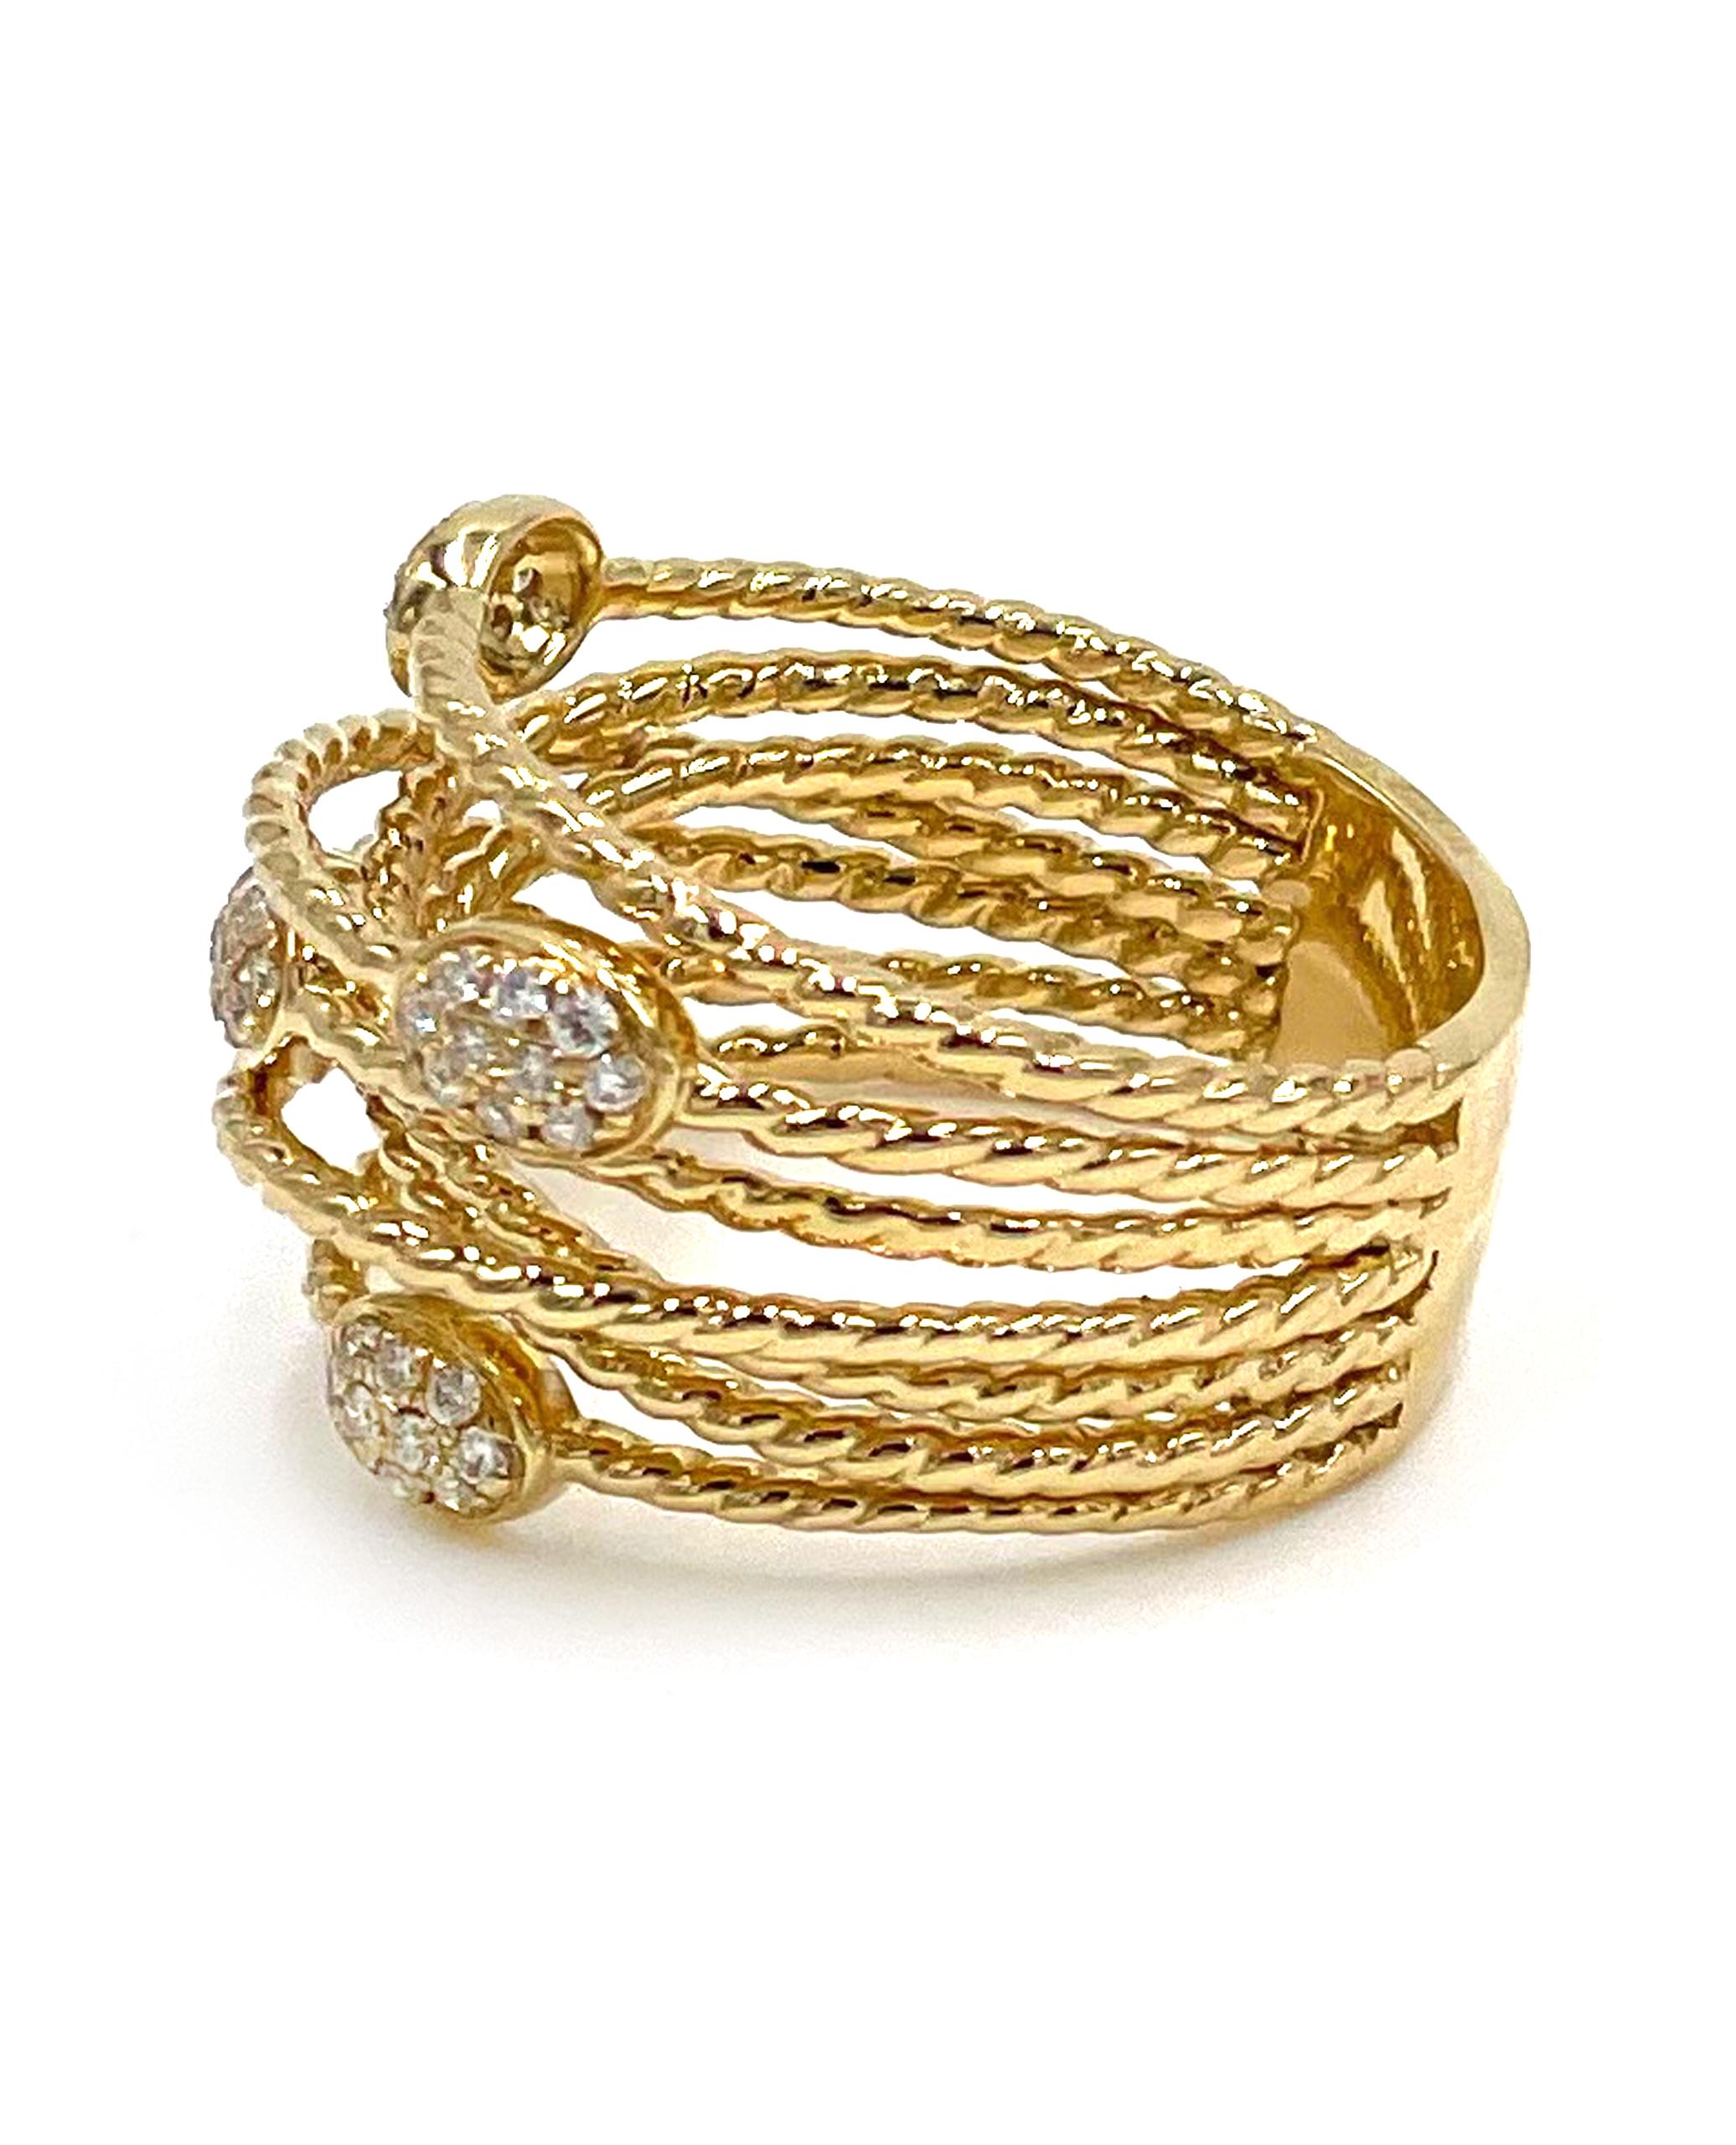 Bague en or jaune 18K avec diamants tissés, détails de la corde et diamants ronds de 0,28 carat.

* Taille du doigt 6.25
* Les diamants sont de couleur H et de pureté SI.